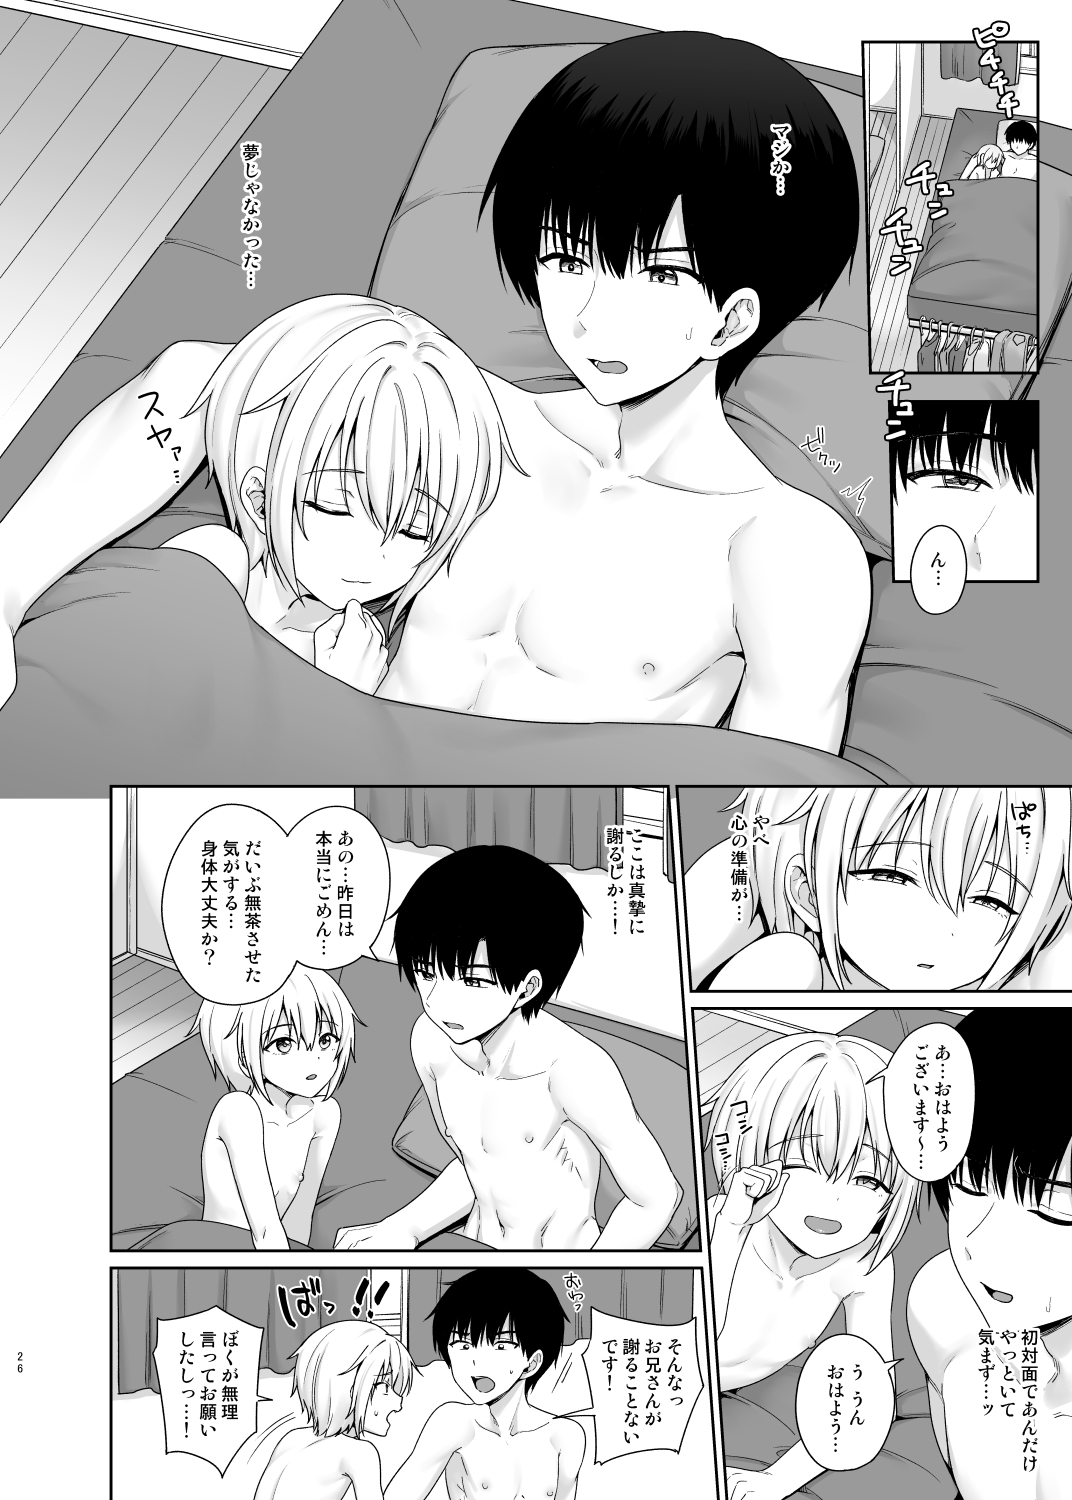 [Toitoikai (Toitoi)] Succubus-kun to no Seikatsu 1 - Life with the Succubus boy. [Digital] page 27 full